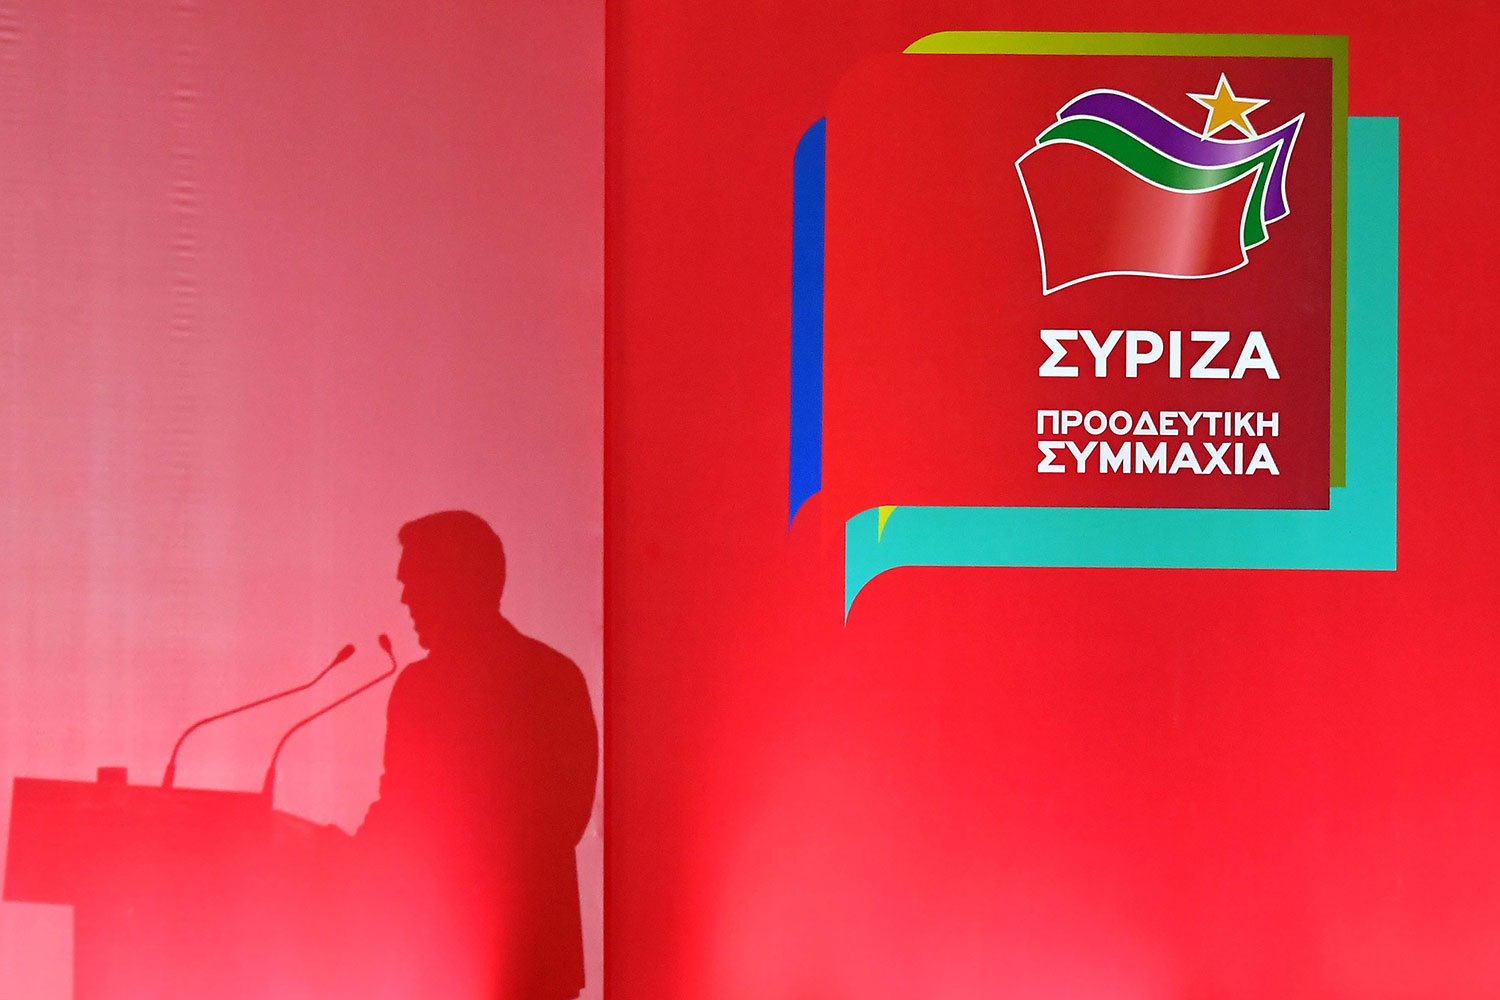 Αυτοί είναι οι υποψήφιοι του ΣΥΡΙΖΑ για τις εθνικές εκλογές – Δείτε όλα τα ονόματα